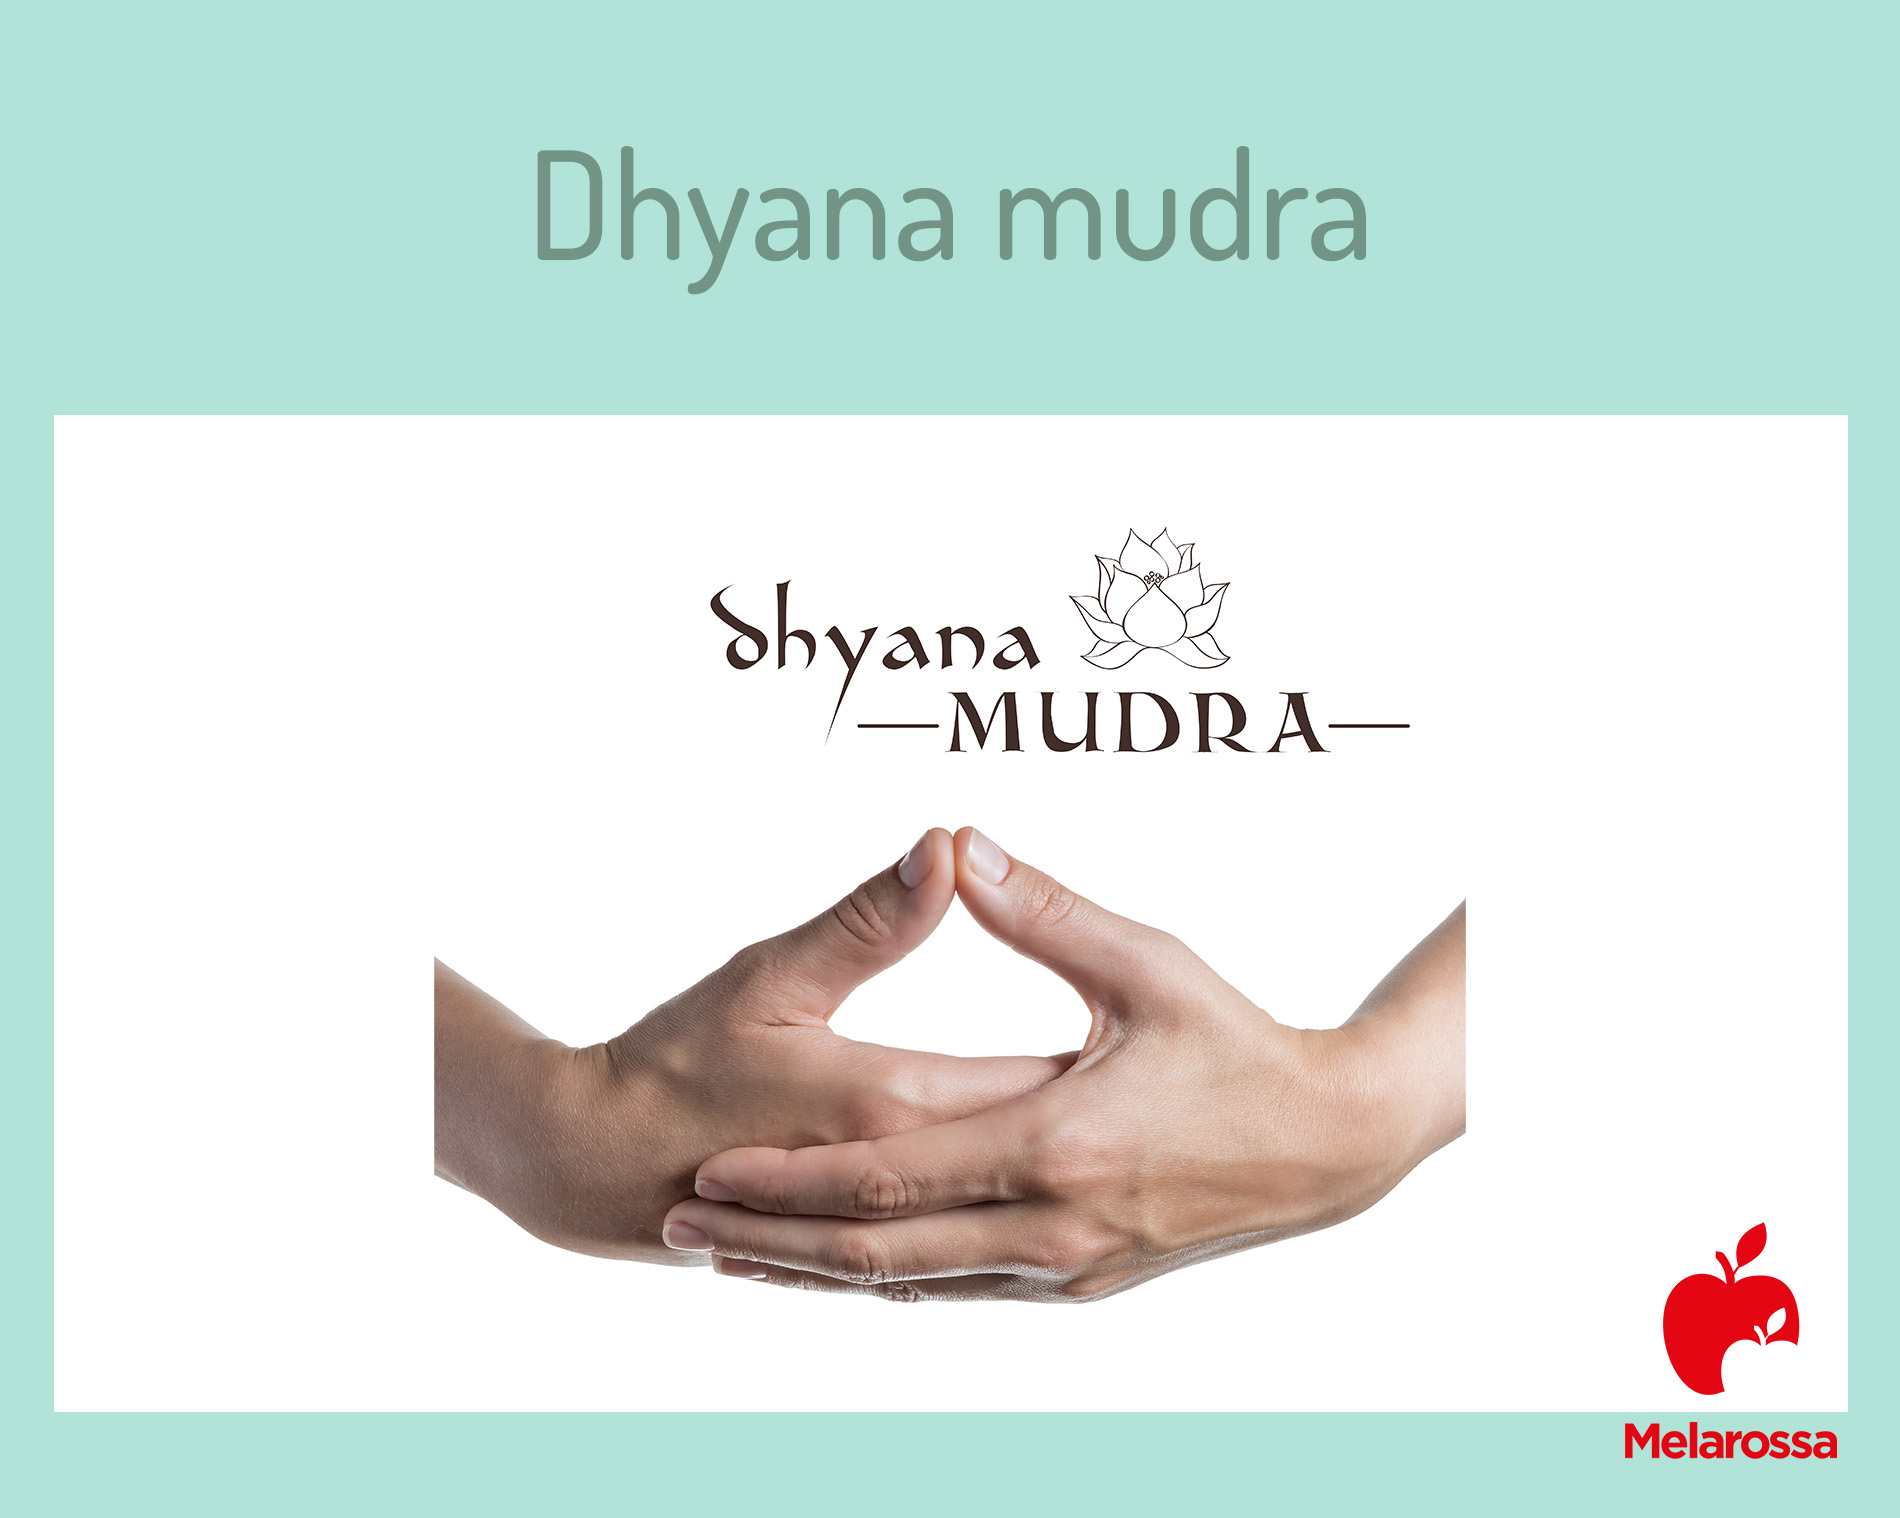 come fare il mudra Dhyana